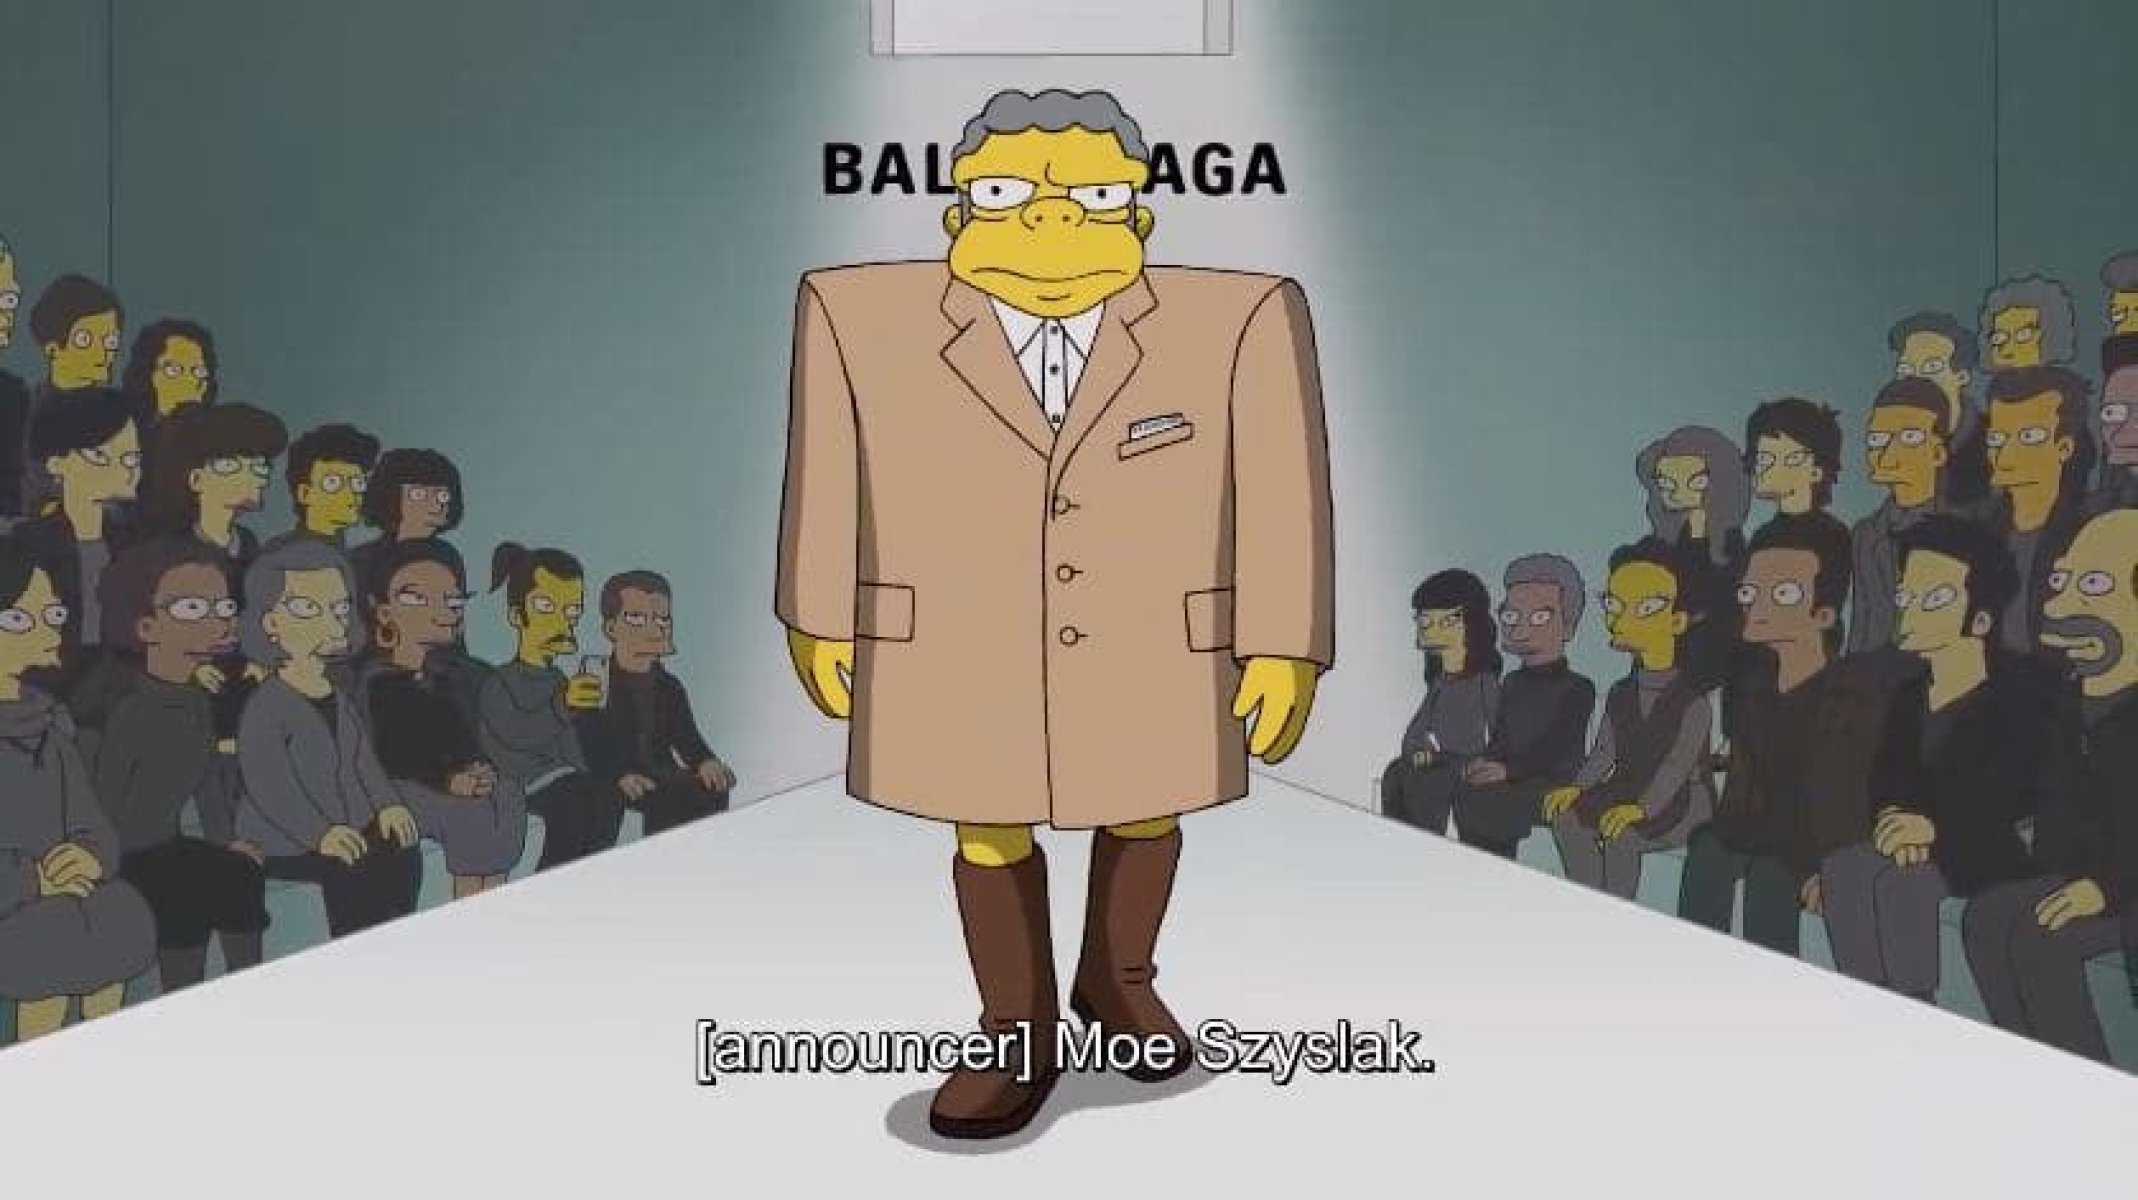 Неделя моды в Париже: персонажи «Симпсонов» представили новую коллекцию Balenciaga (фото, видео)